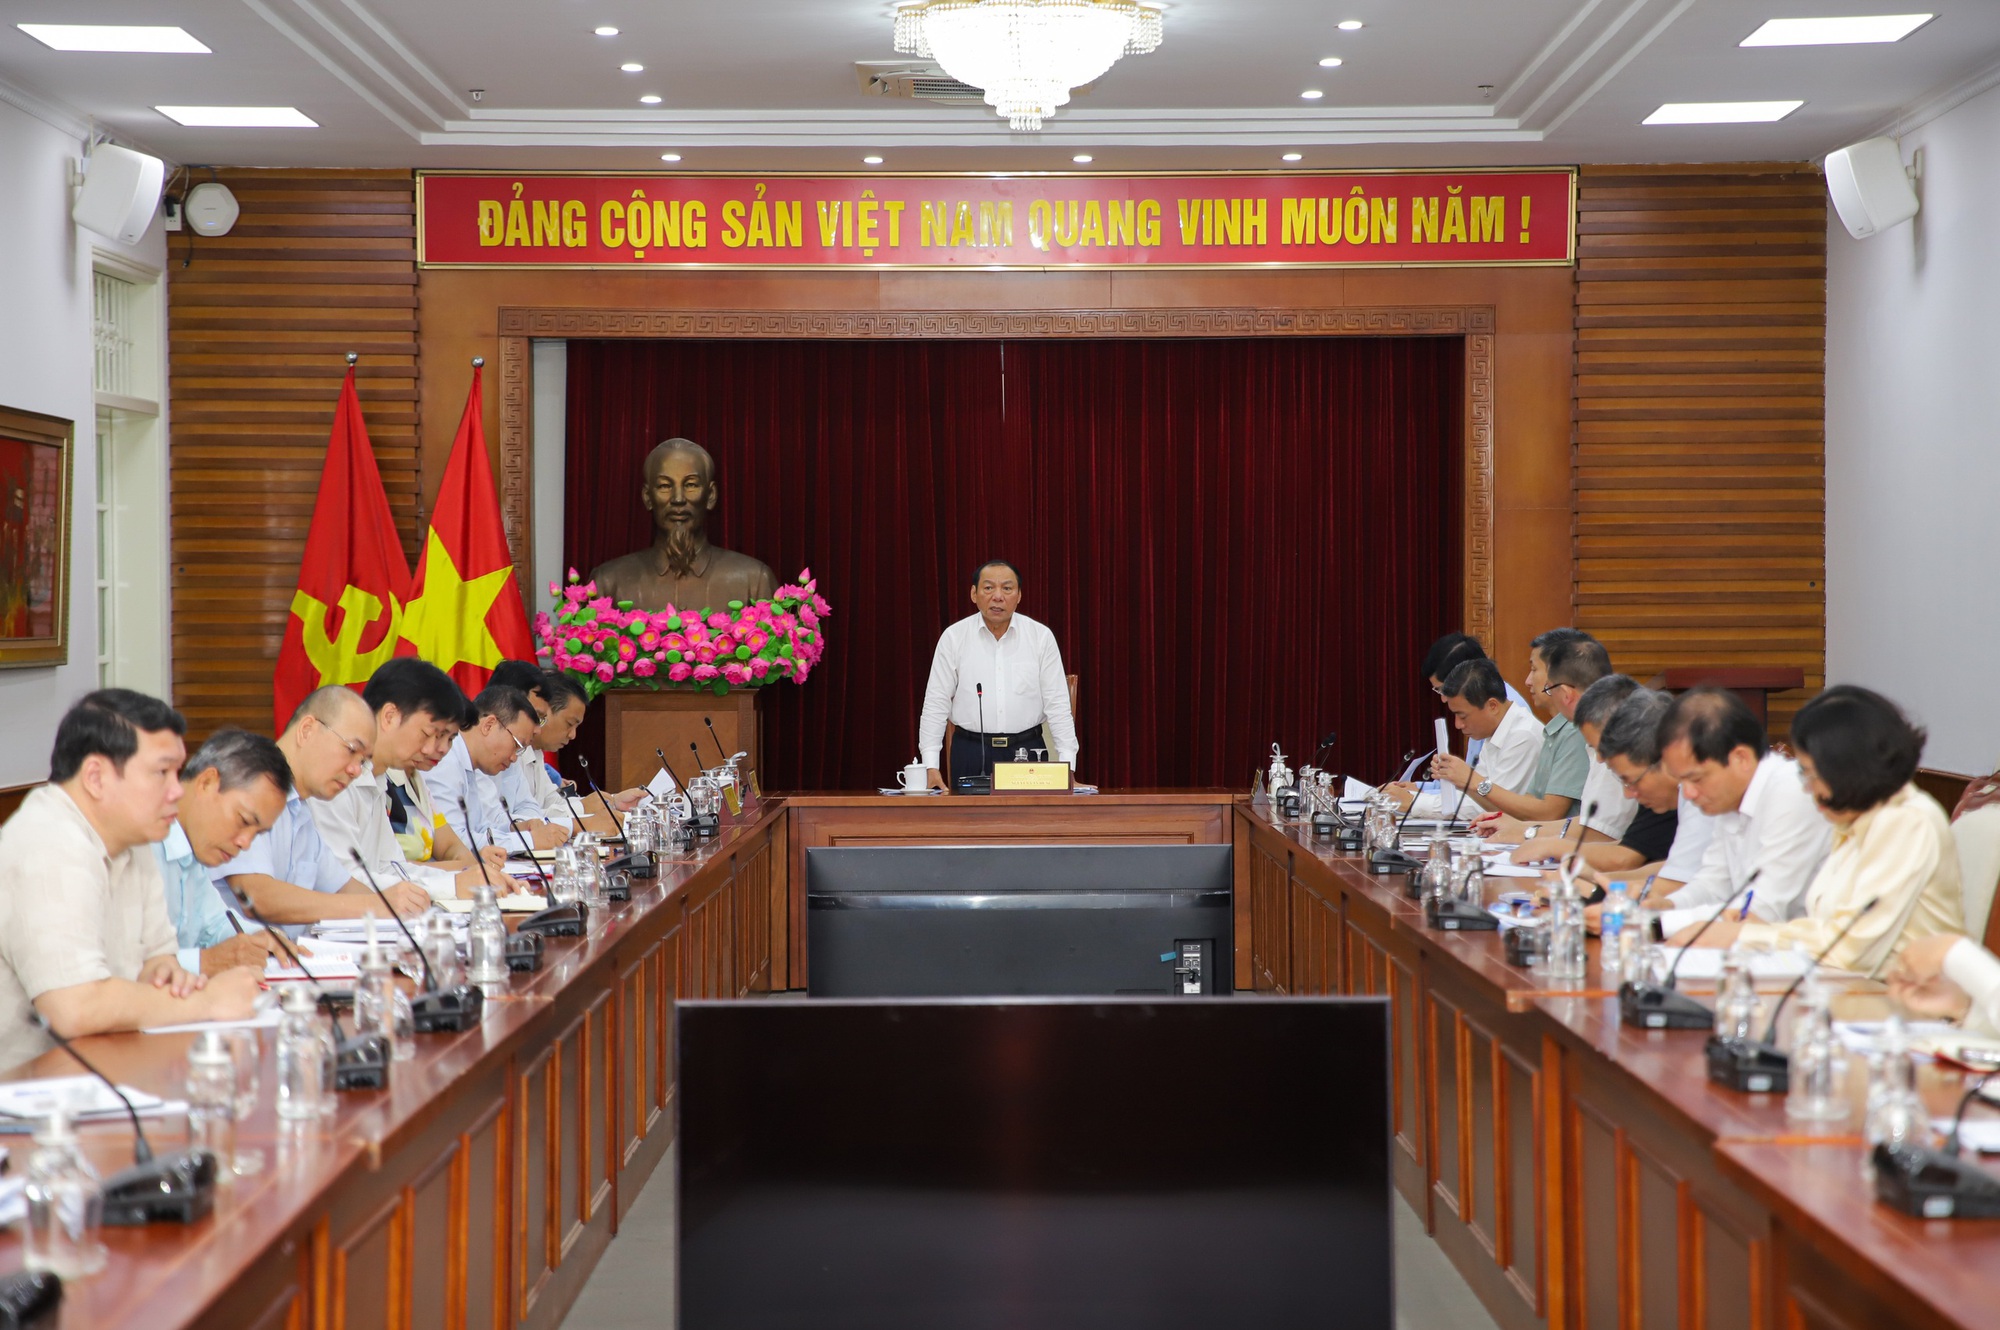 Bộ trưởng Nguyễn Văn Hùng: Rà soát, sửa đổi kịp thời thể chế chính sách để kiến tạo, phát triển hơn nữa ngành Thể thao